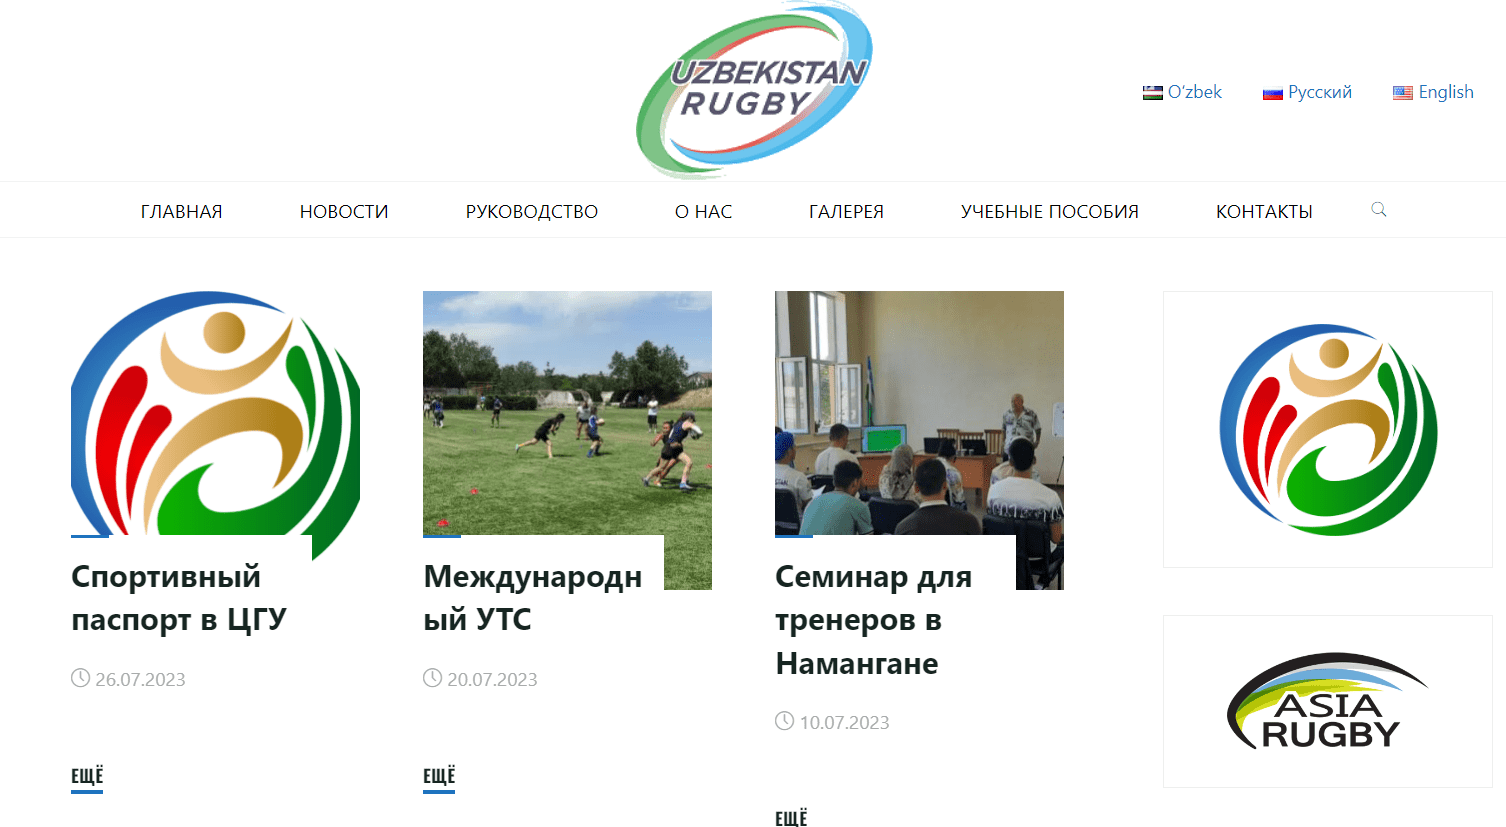 Федерация регби Узбекистана (rugby.uz) - официальный сайт